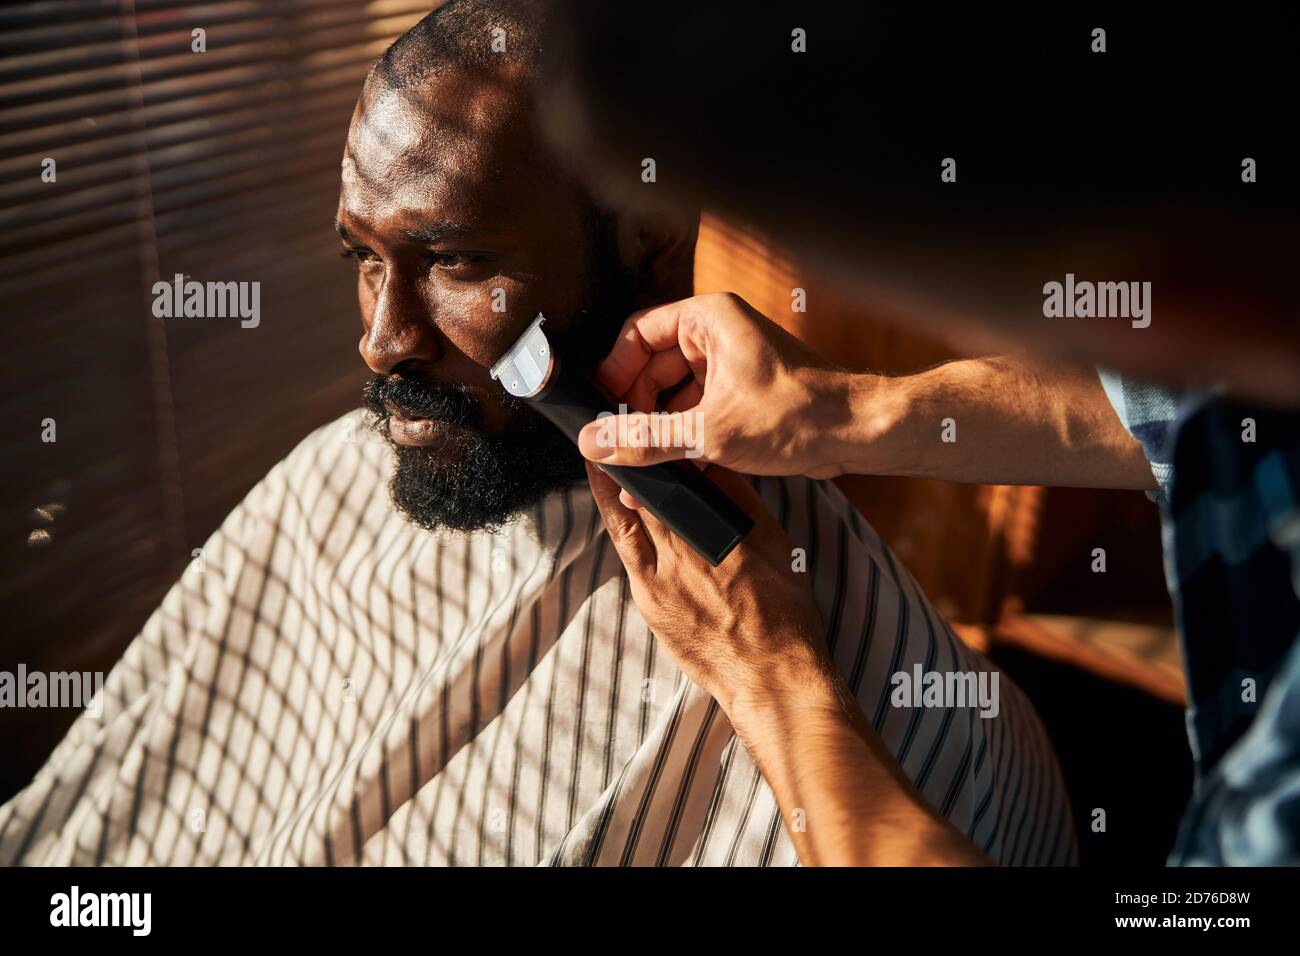 Barbe rasage de la barbe du client avec tondeuse électrique dans un salon de coiffure Banque D'Images